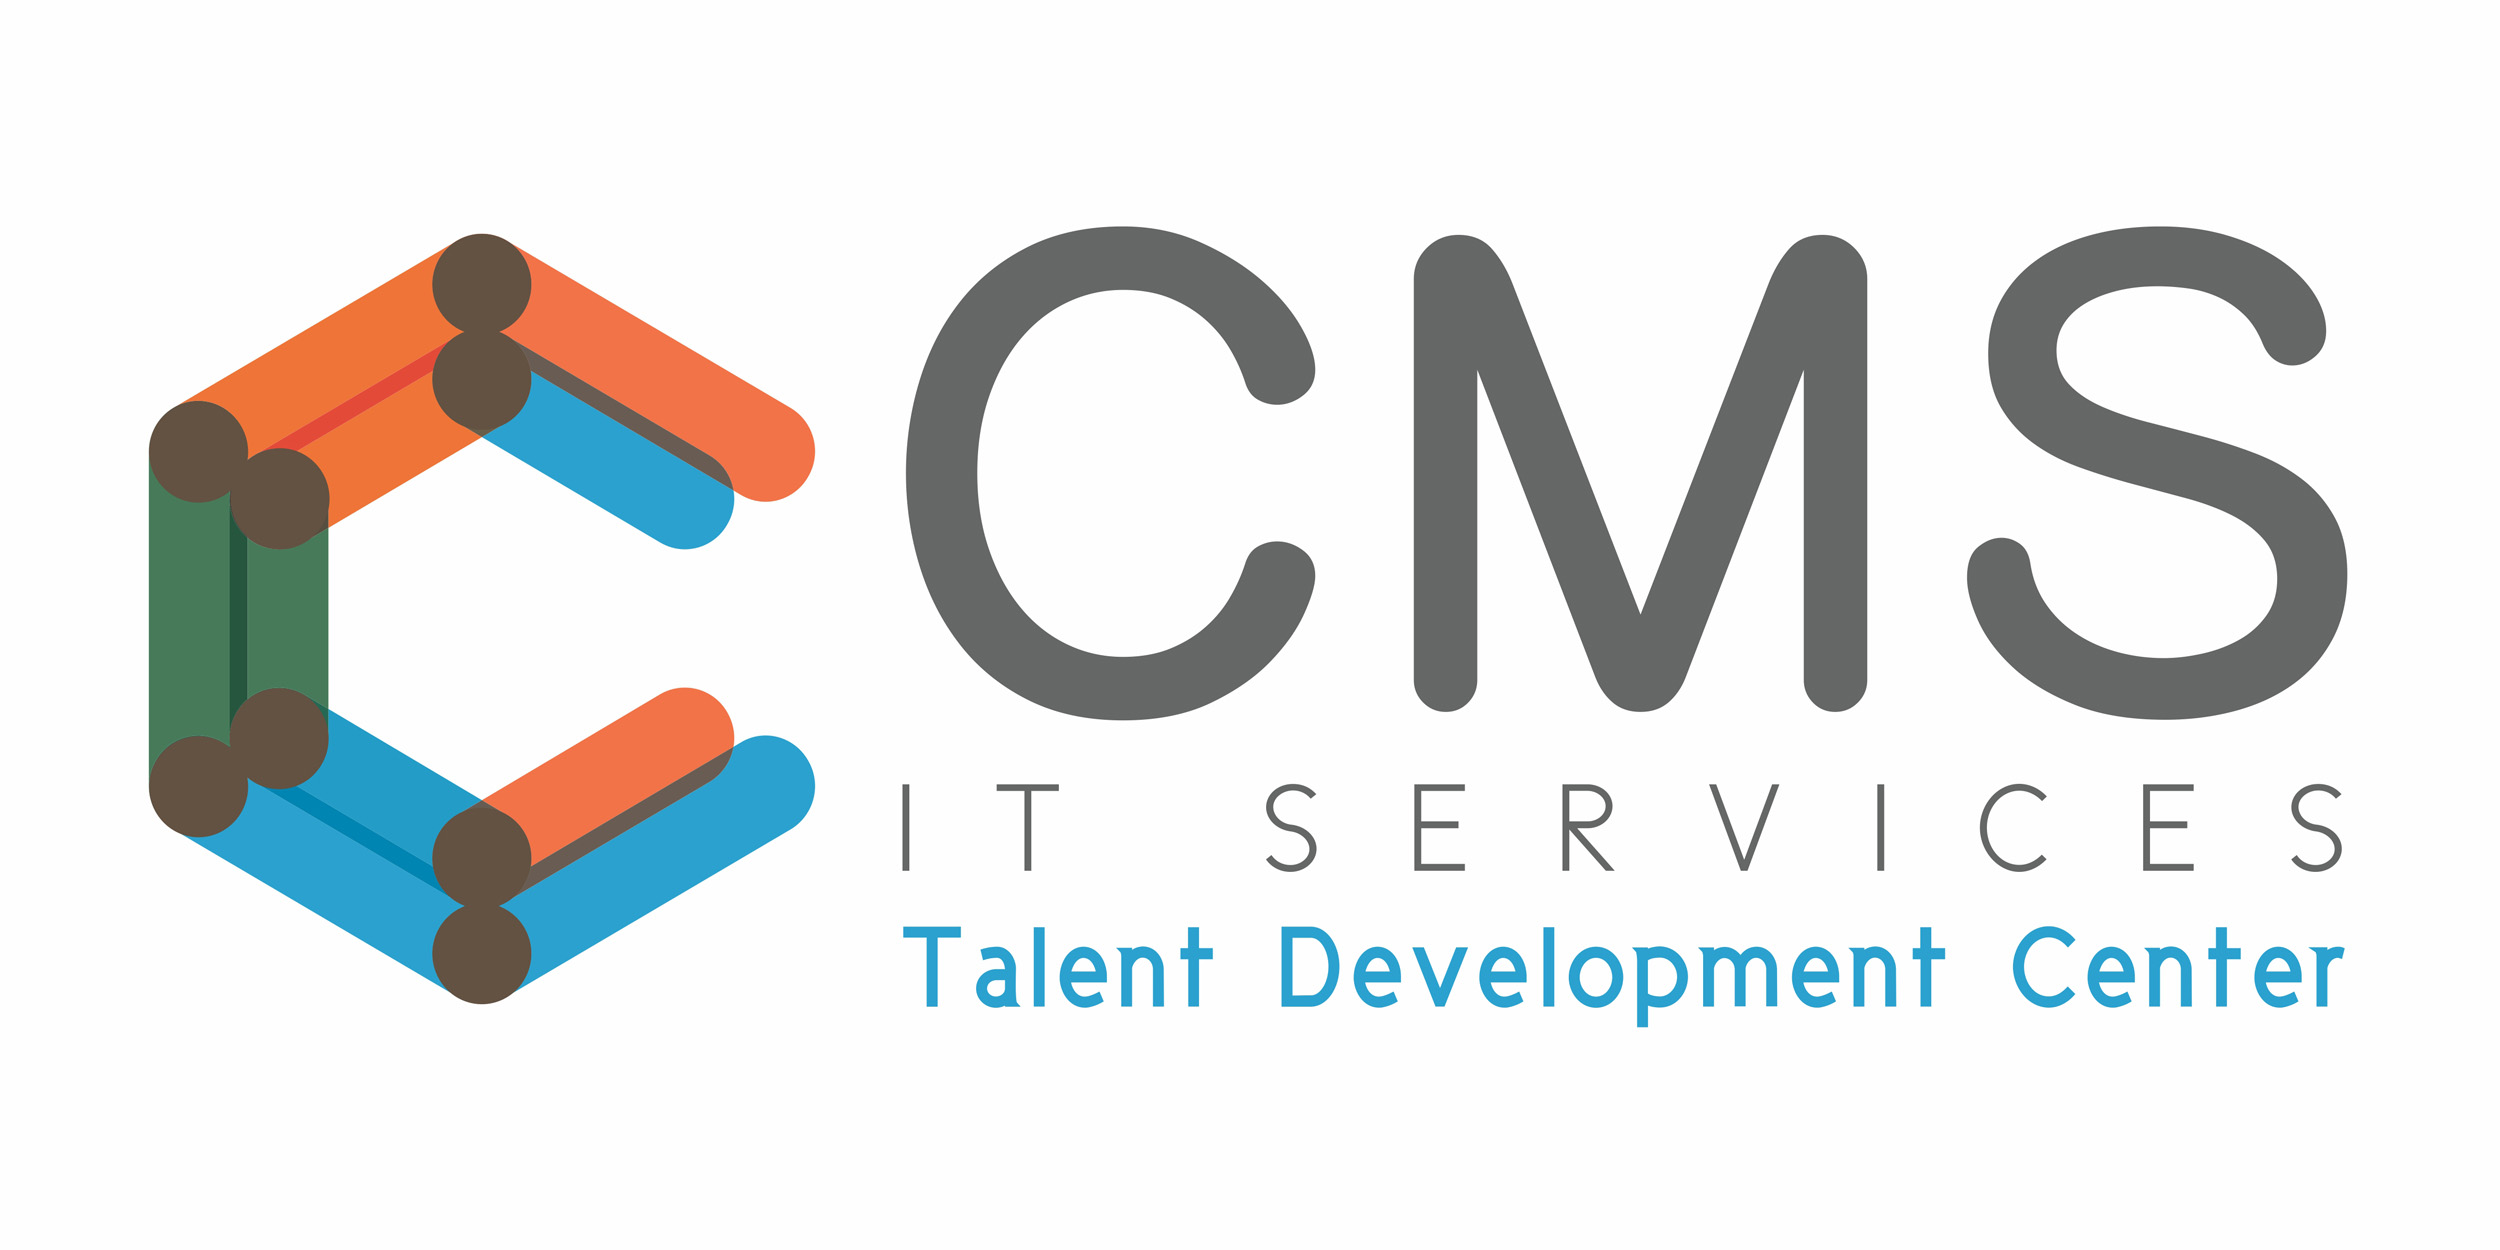 CMS IT Services Talent Development Center